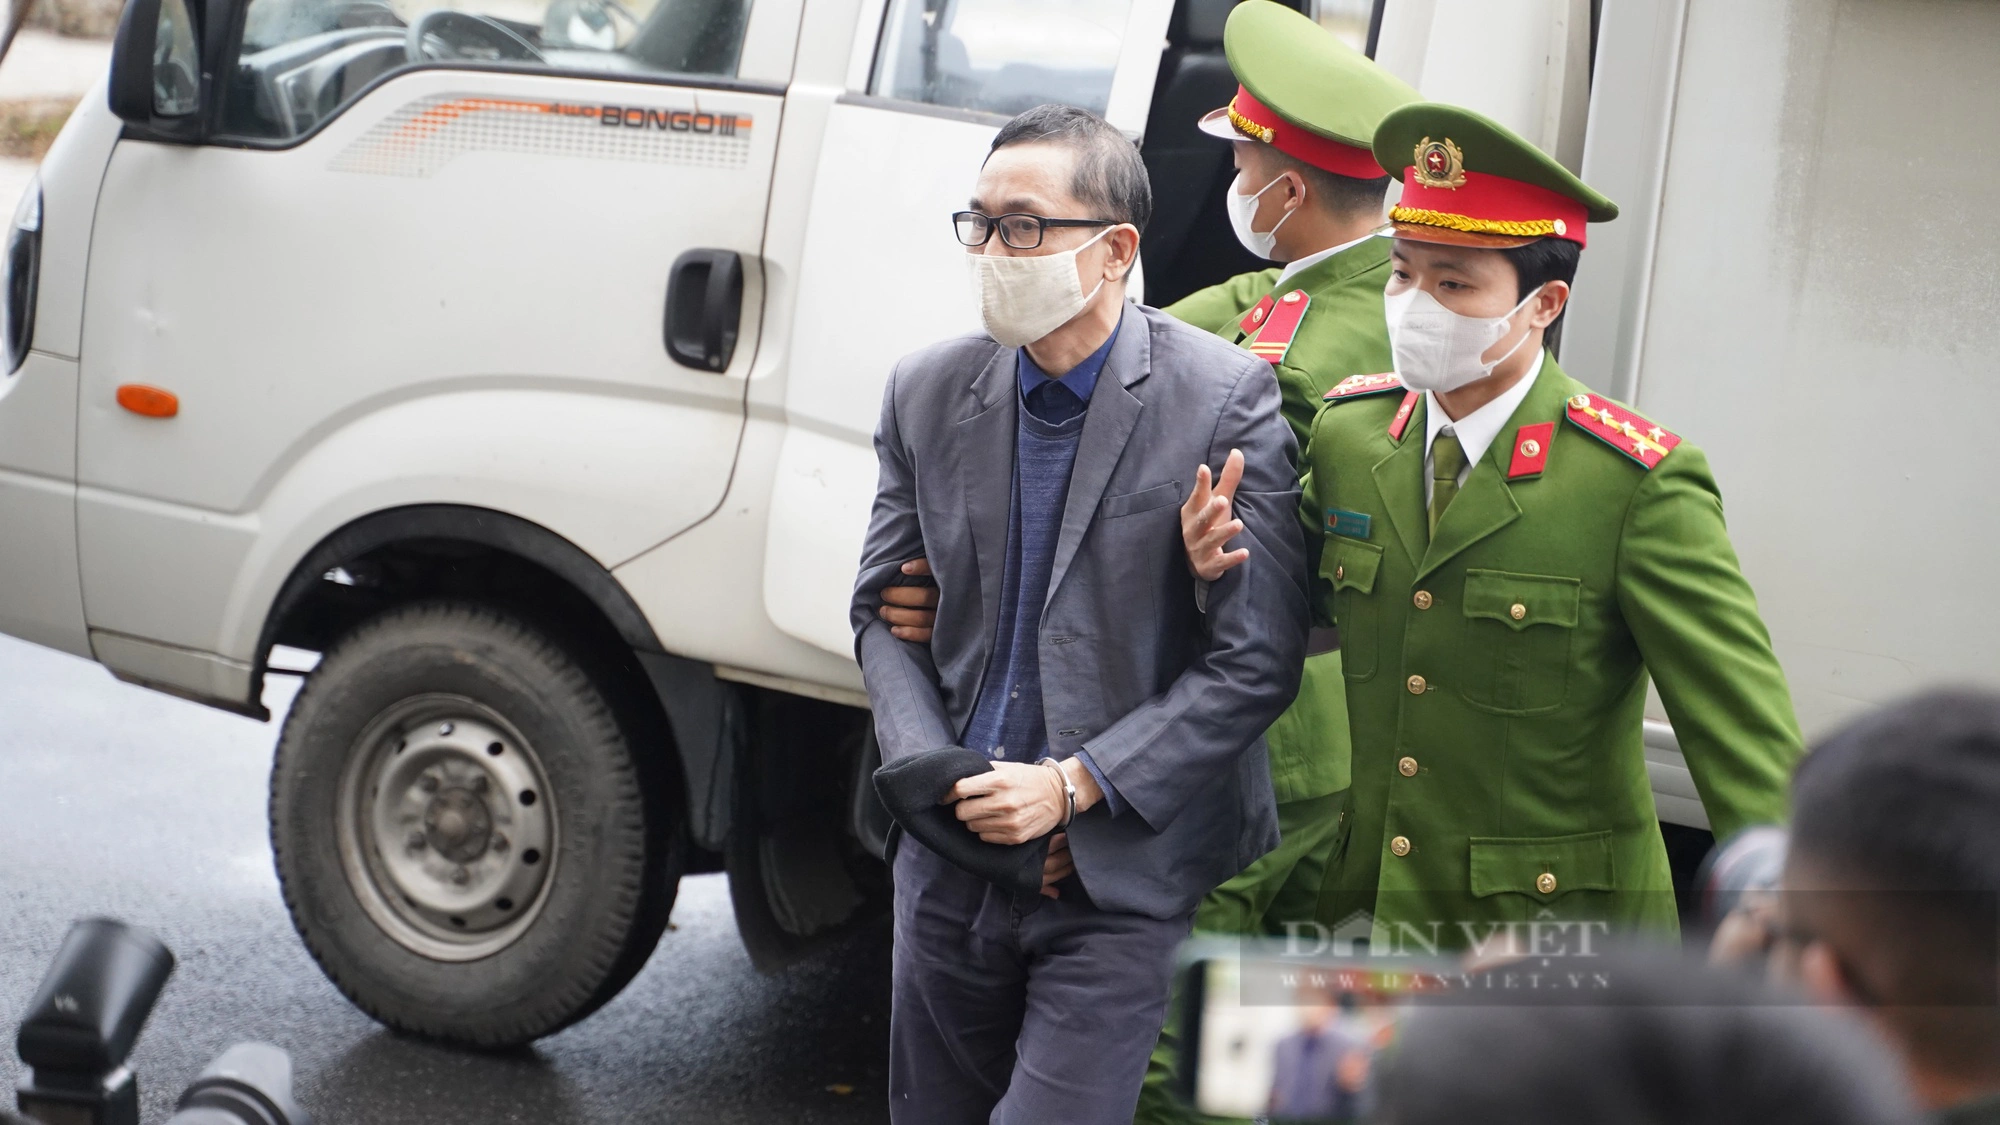 Xử vụ Việt Á: Cựu Bộ trưởng Y tế tóc bạc trắng, cựu Vụ trưởng giơ tay che mặt khi tới tòa- Ảnh 6.